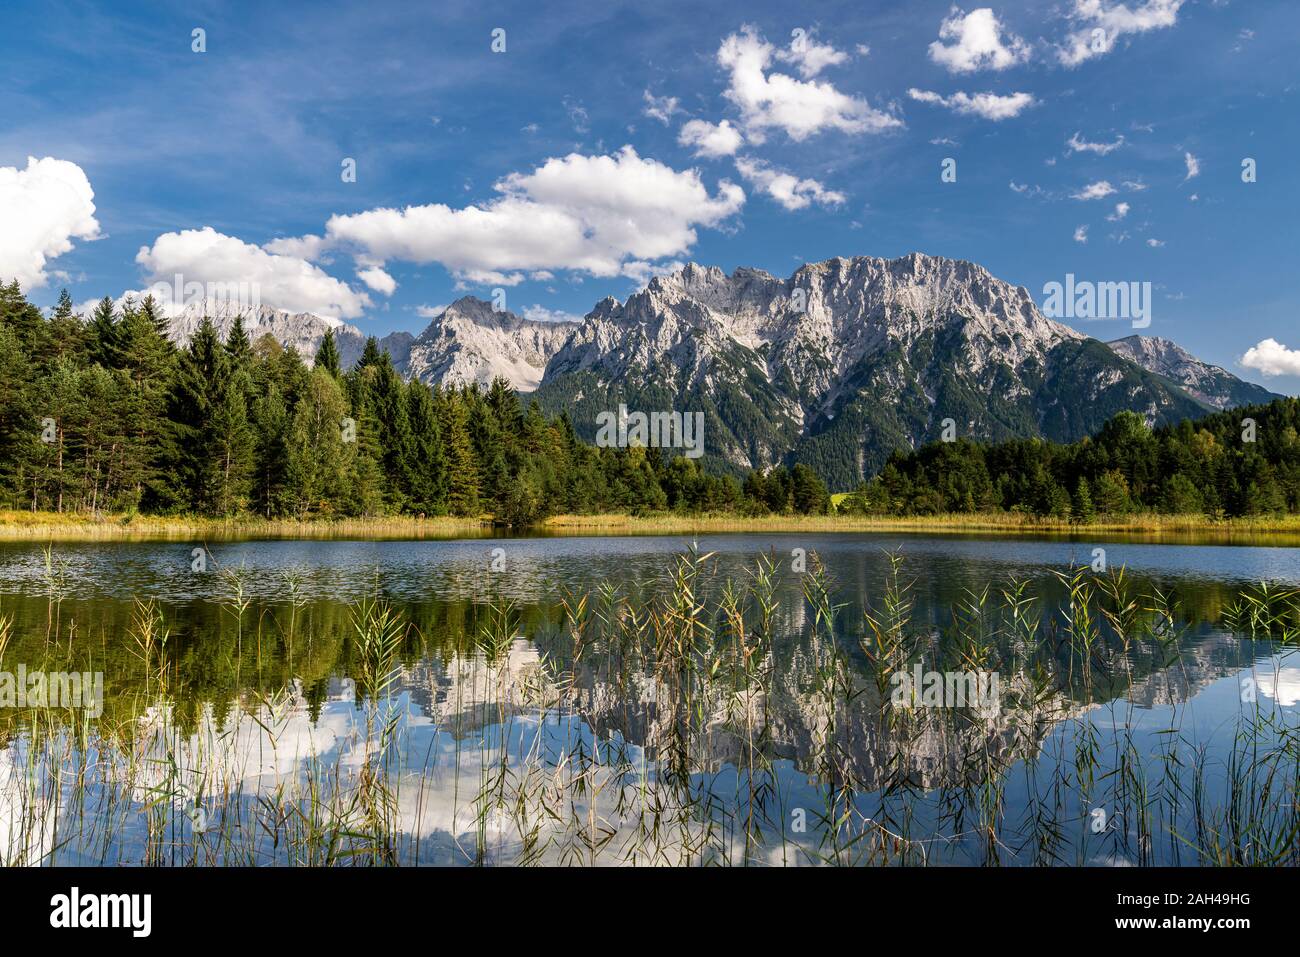 Austria, Tirolo, vista panoramica del lago Weisssee riflettendo sulle montagne del Wetterstein e il bosco circostante Foto Stock